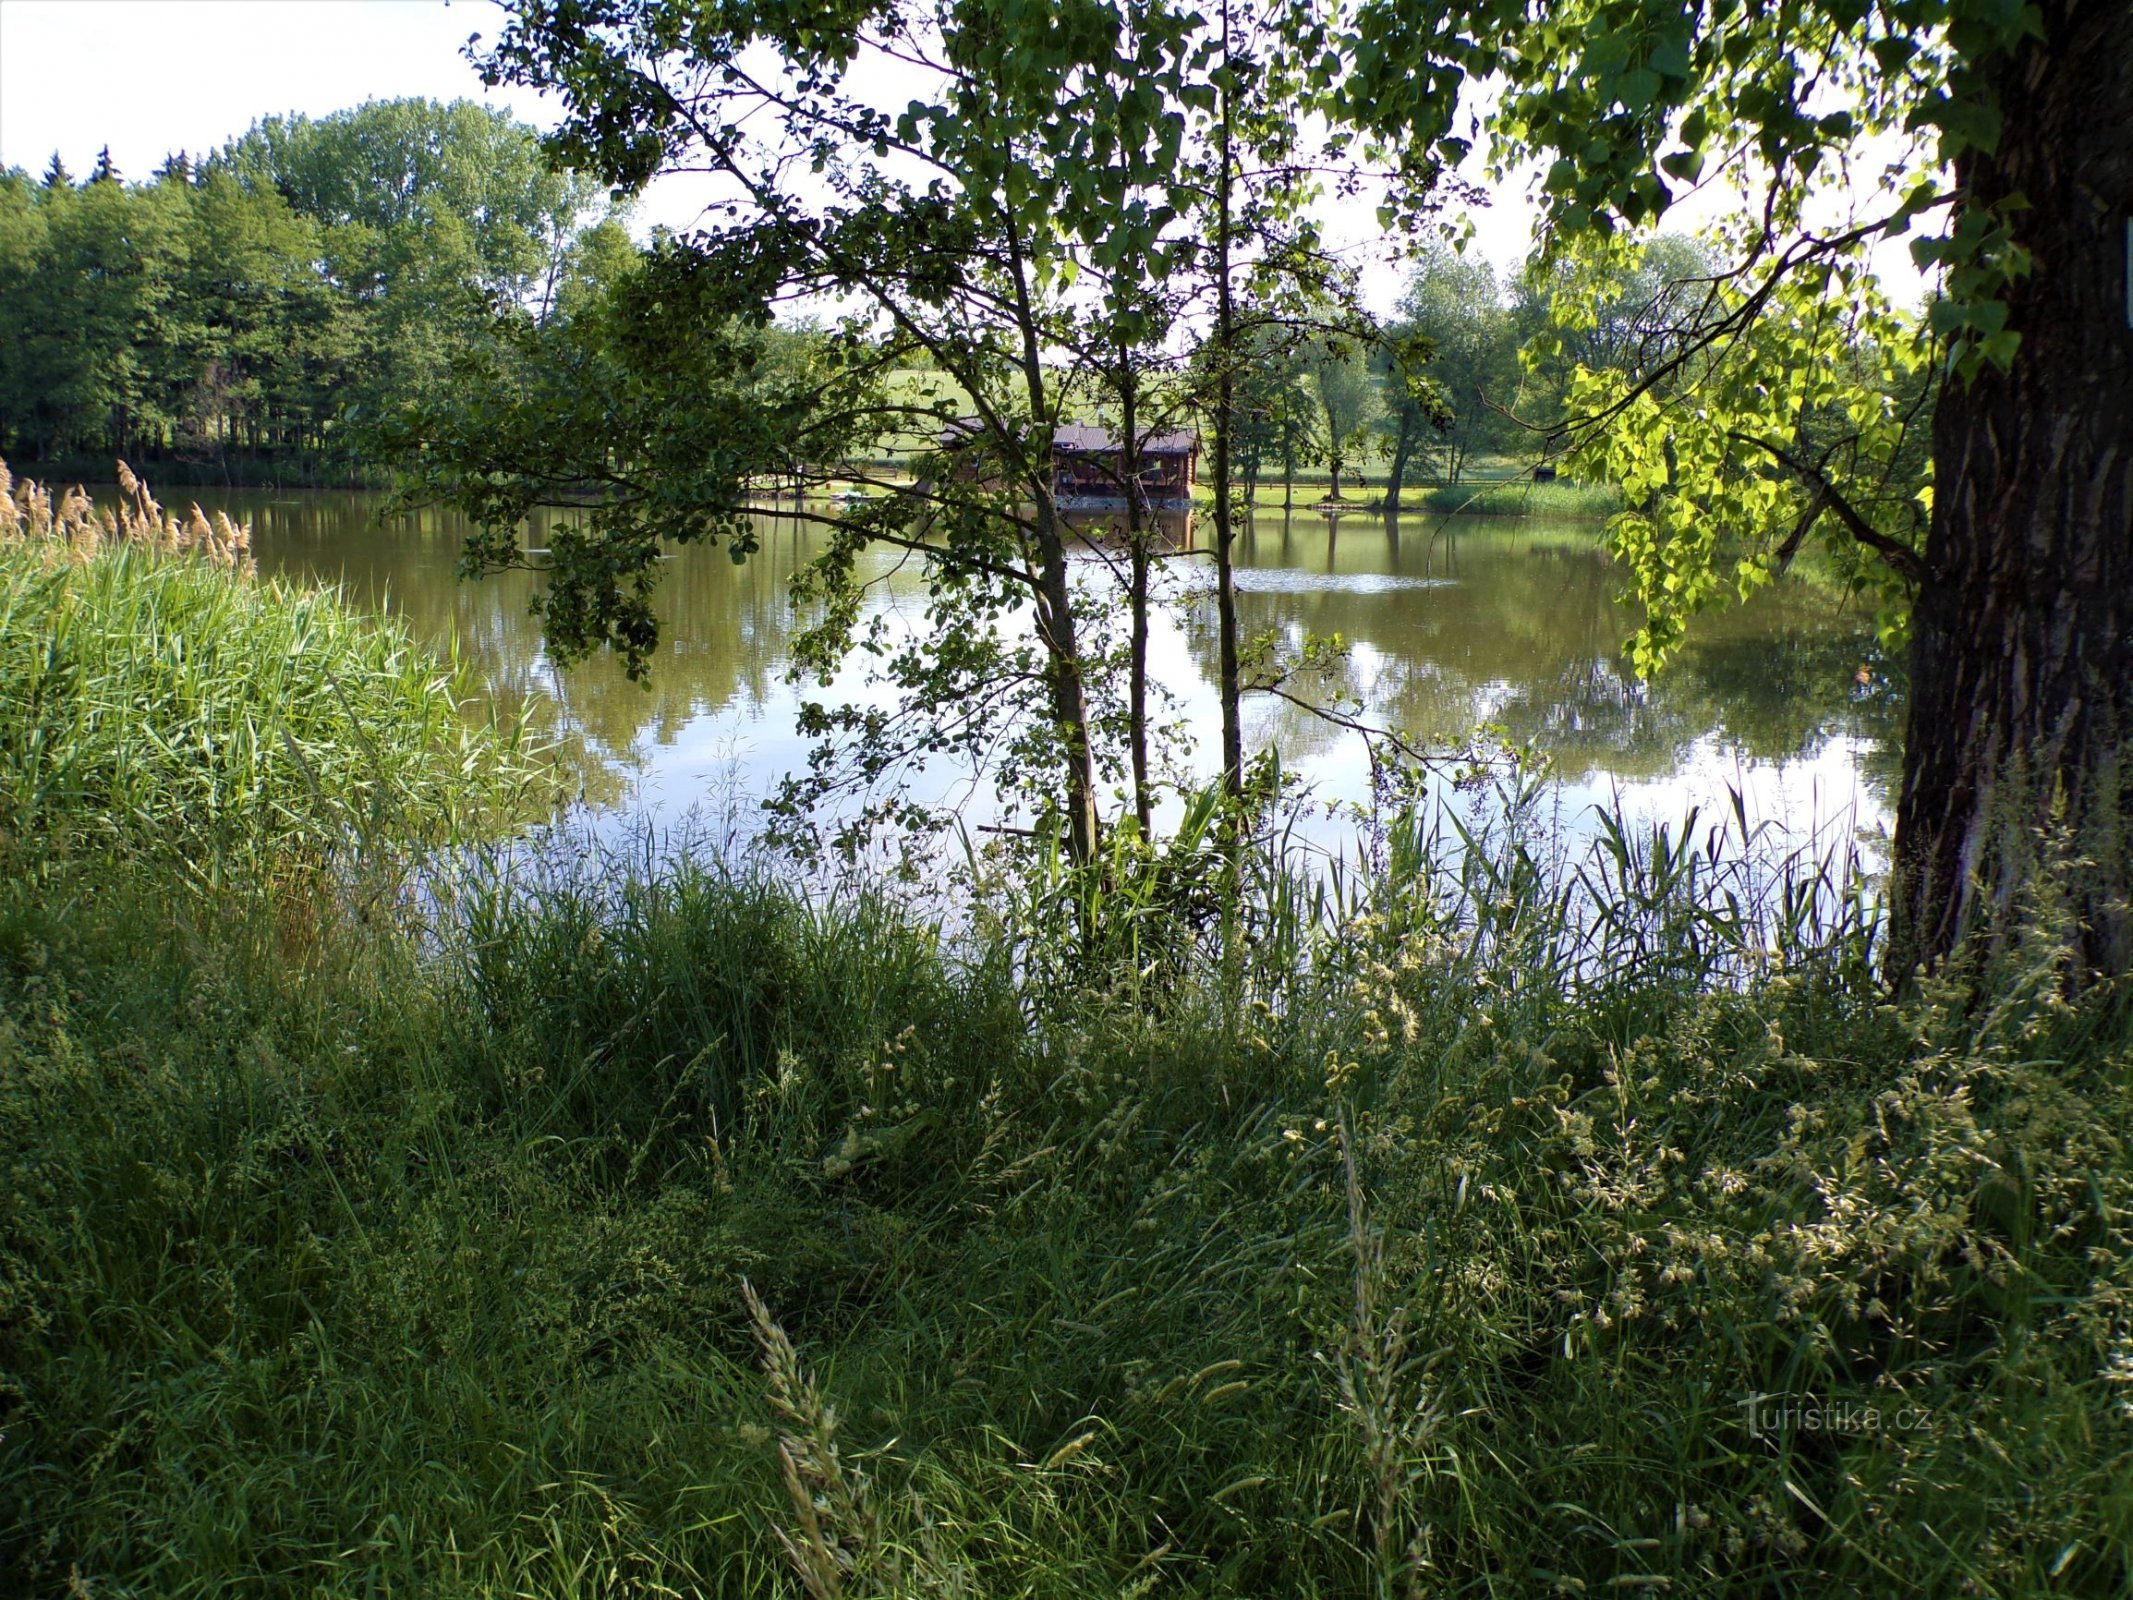 Pavlovský rybník (Jeníkovice, 15.6.2021. XNUMX. XNUMX)